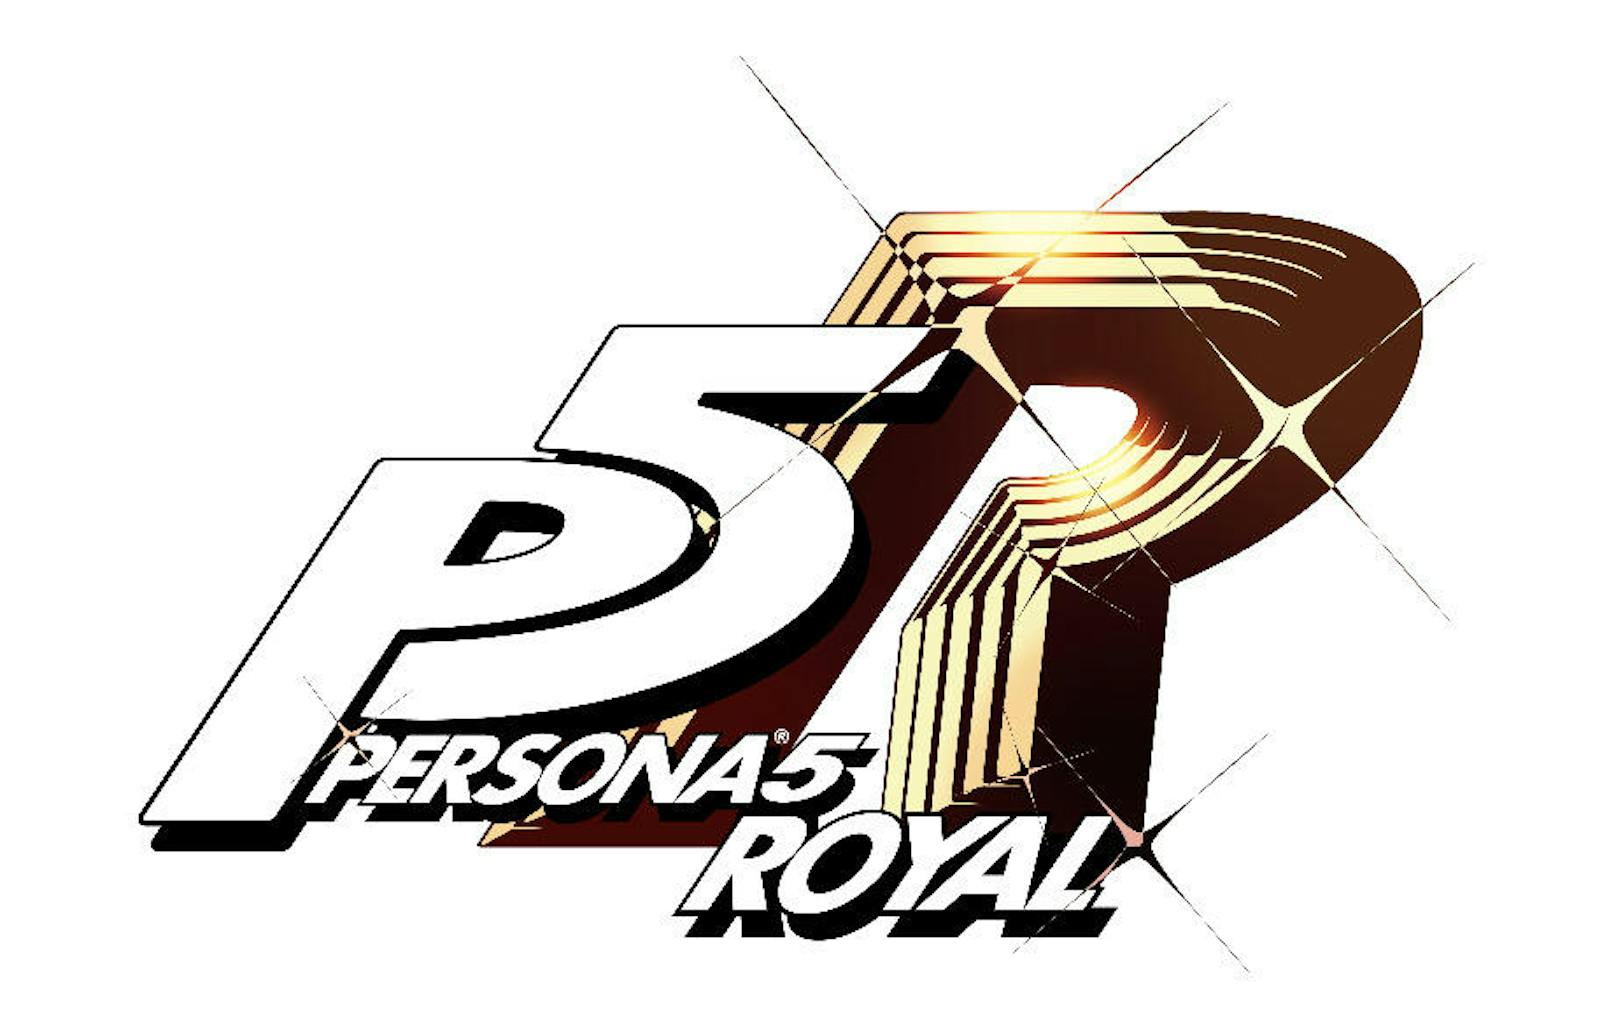 Nach einer kurzen Frage- und Antwort-Runde bei der Atlus Art Exhibit 2019, in der Soejima-san einige seiner Einflüsse für die von Fans bevorzugten Designs in "Persona 5 Royal" und "Catherine: Full Body" erläuterte, wurde ein brandneuer Trailer gezeigt, der den mit Spannung erwarteten Erscheinungstermin für "Persona 5 Royal" bekannt gab. Das Spiel erscheint im Frühjahr 2020. <a href="https://www.youtube.com/watch?v=VArlzKwFxNY" target="_blank">Er ist hier zu sehen.</a>